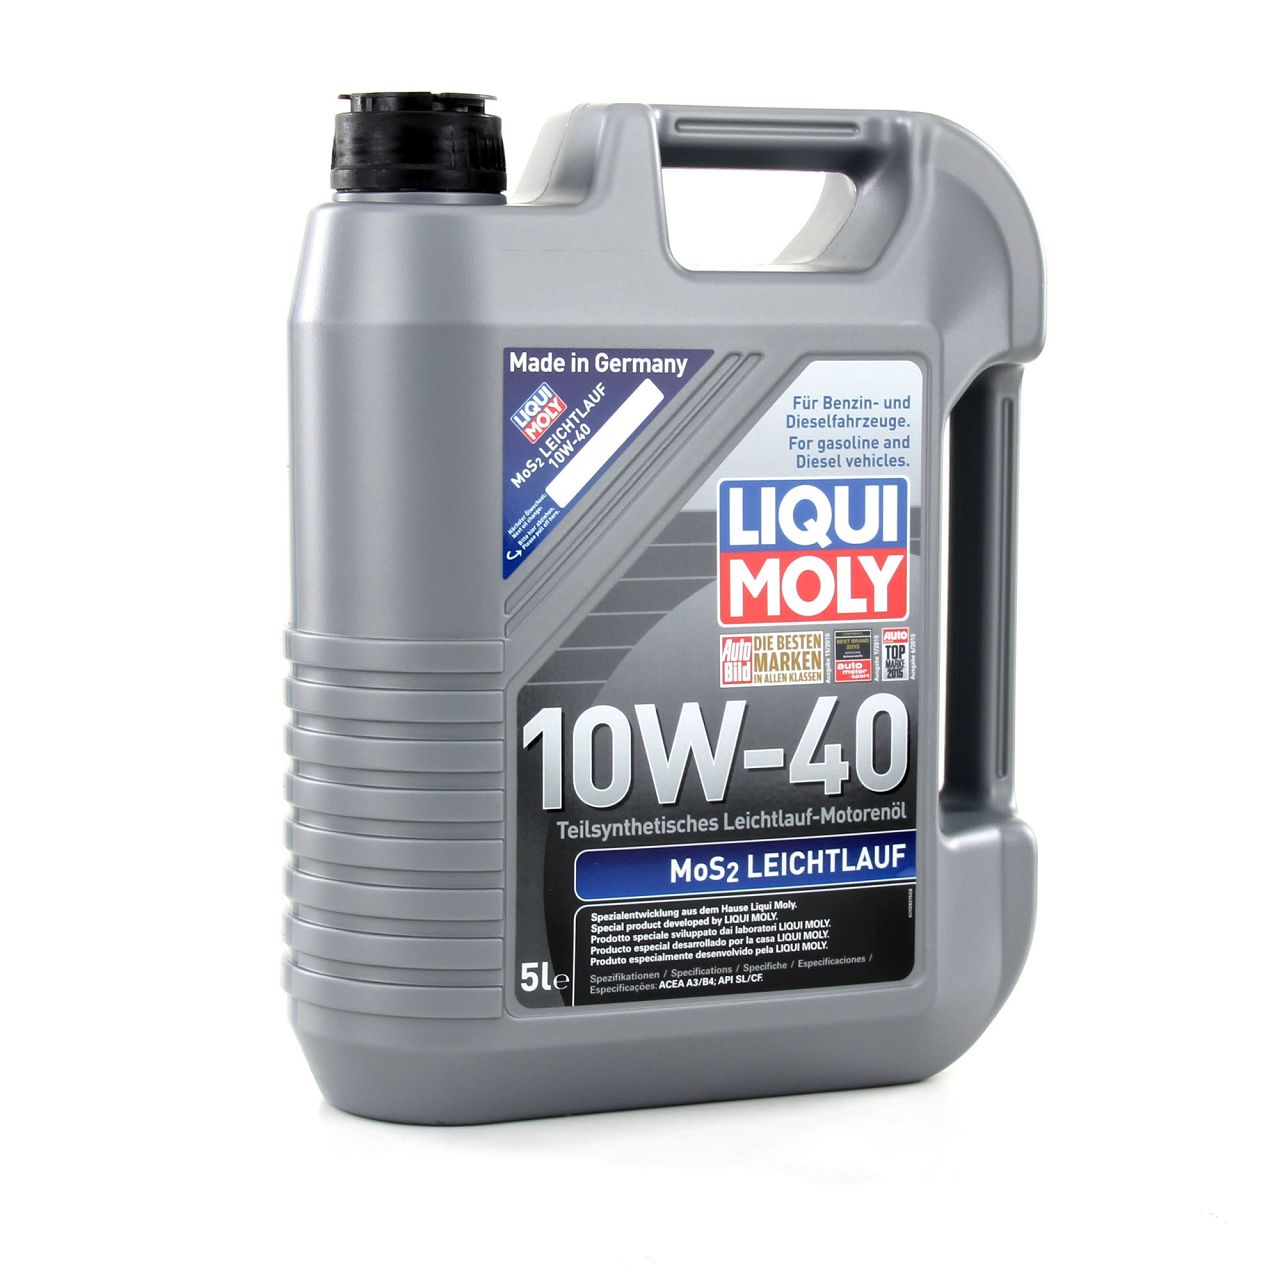 5L LIQUI MOLY 1092 MoS2 LEICHTLAUF 10W-40 10W40 Motoröl Öl ACEA A3